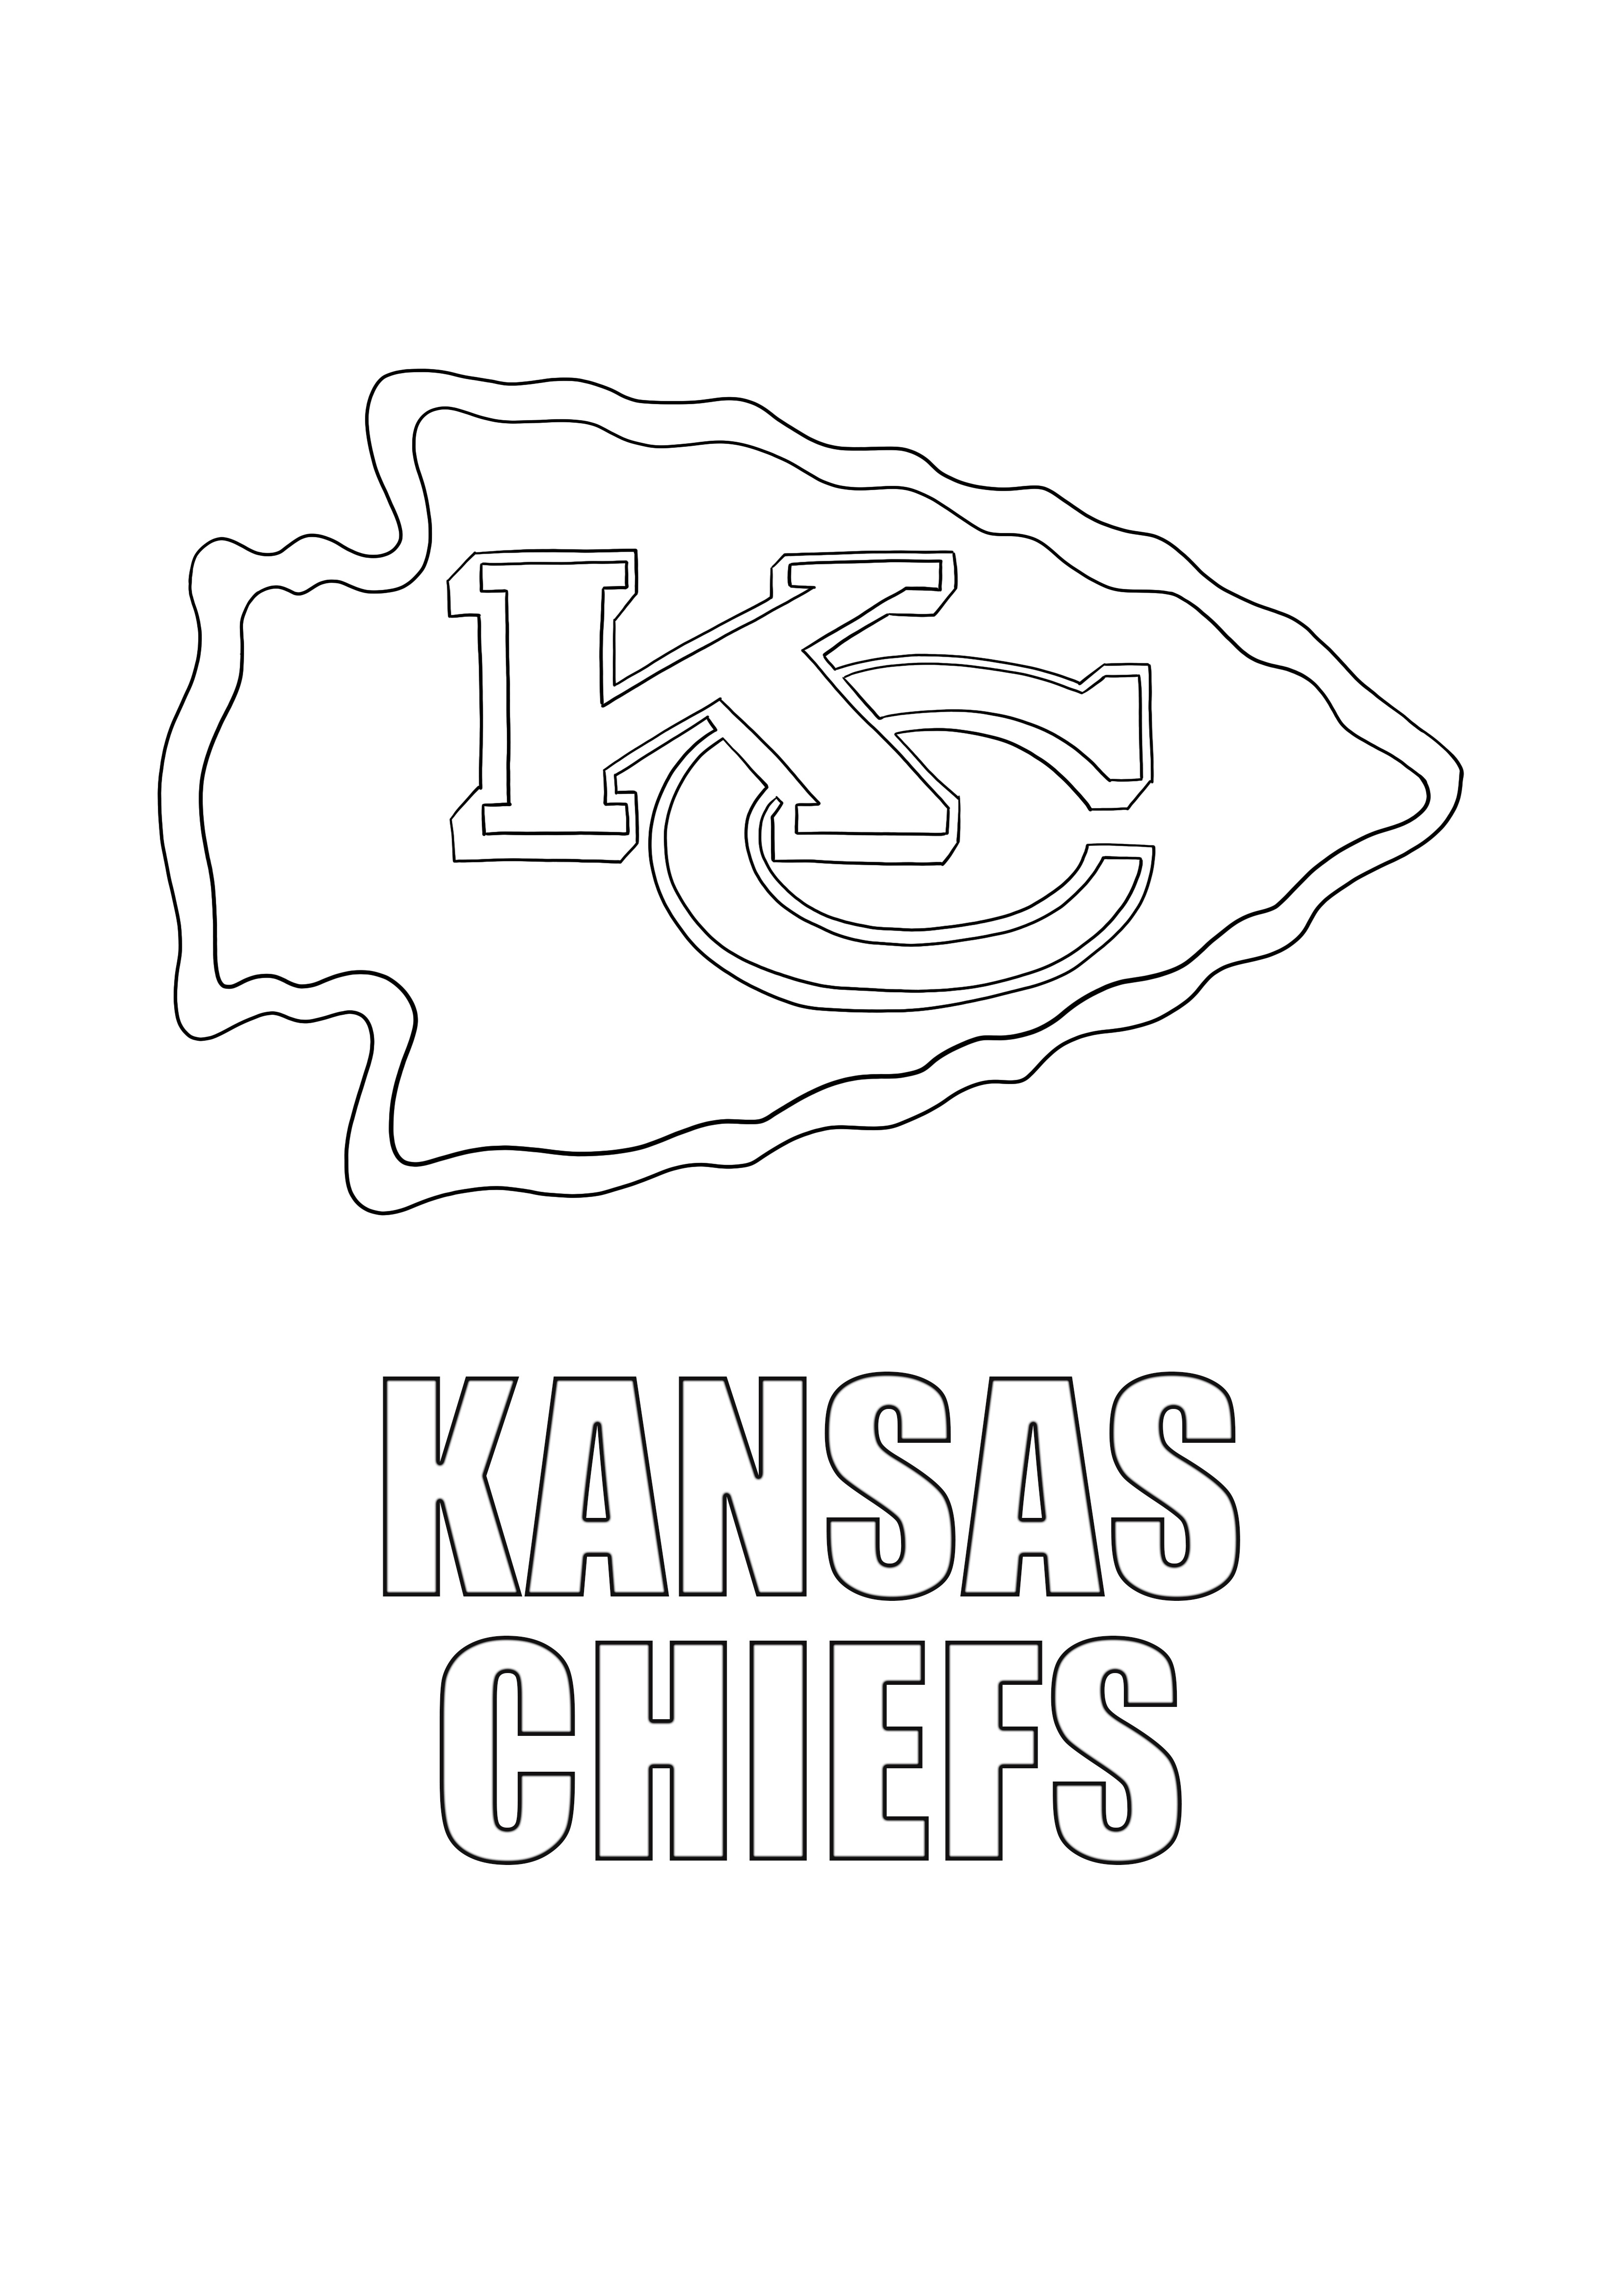 Kansas chiefs para colorear y descargar gratis